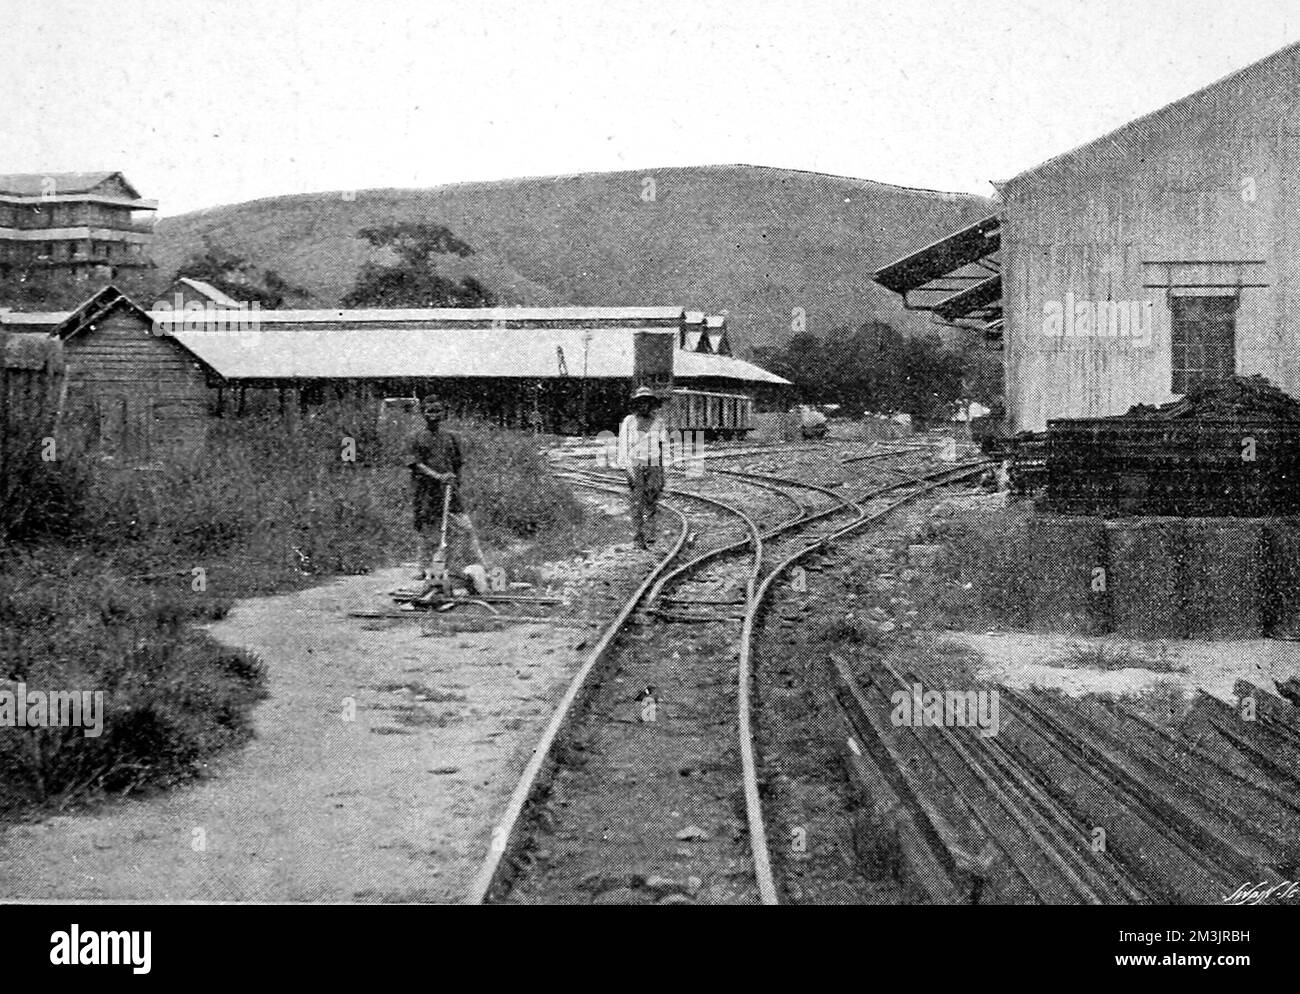 Bahnhof in Matadi, Teil der neuen Kongo-Bahn von Matadi nach Stanley Pool. Die Fertigstellung der Eisenbahn dauerte neun Jahre, und in den ersten fünf Jahren wurden nur 25 km Gleis gebaut. Die Eisenbahn war für die Entwicklung der Kongo-Region von entscheidender Bedeutung, da der Handel von Region zu Region transportiert werden konnte. 1898 Stockfoto